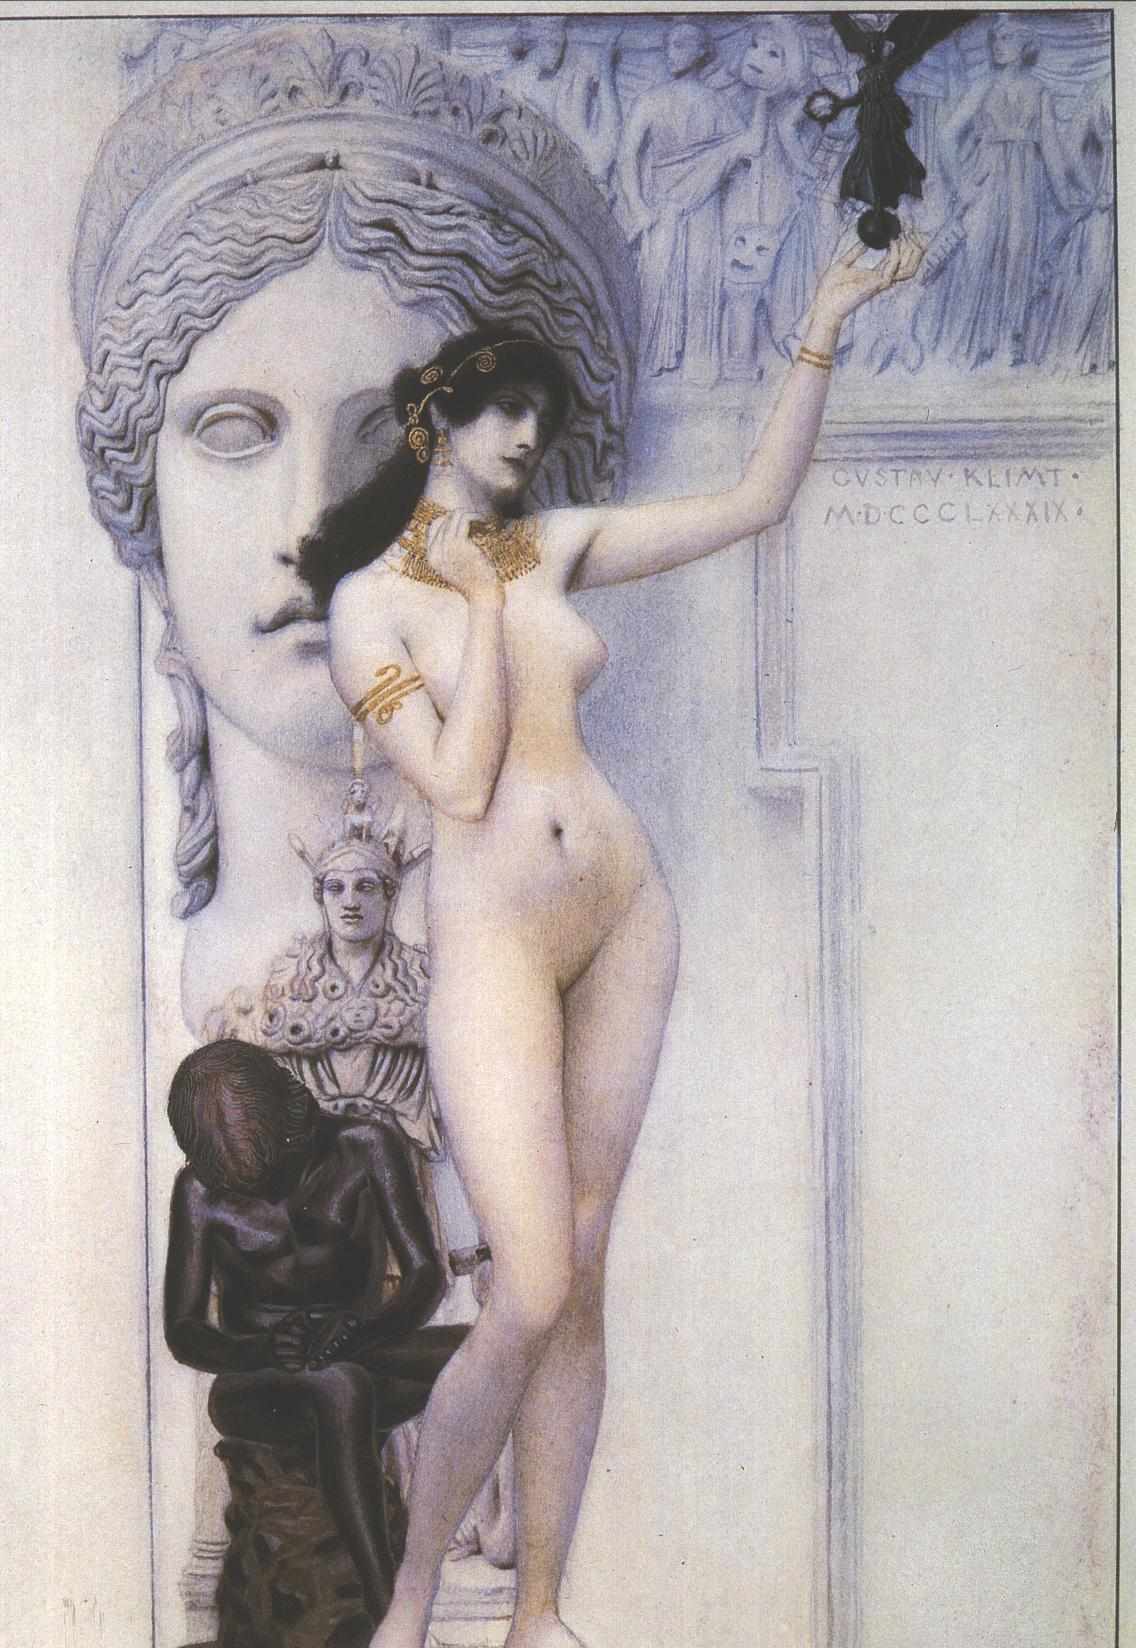 تمثیل از مجسمه by گوستاو کلیمت - 1889 - 43.5 x 30 cm 